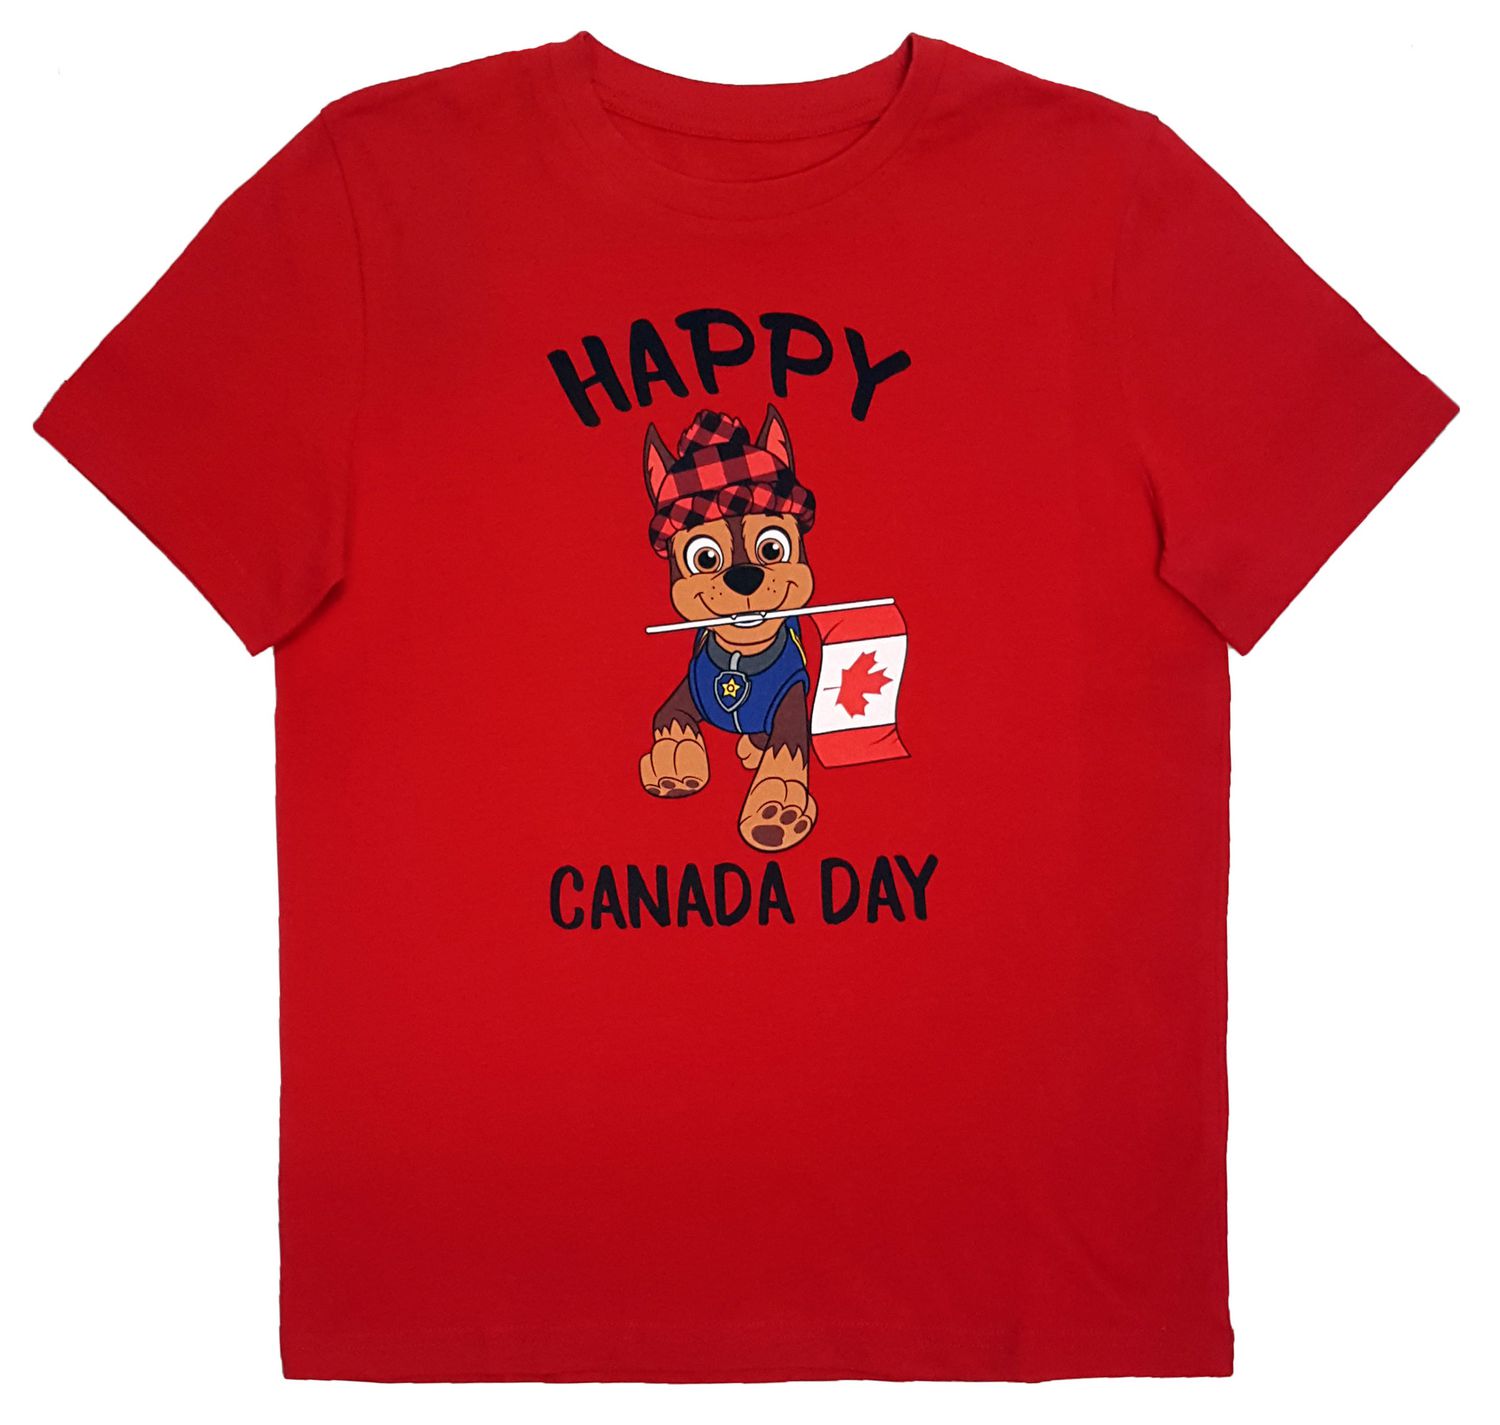 Rytmisk Ekspression forsætlig PAW Patrol Canada Day Boy's short Sleeve T-Shirt | Walmart Canada